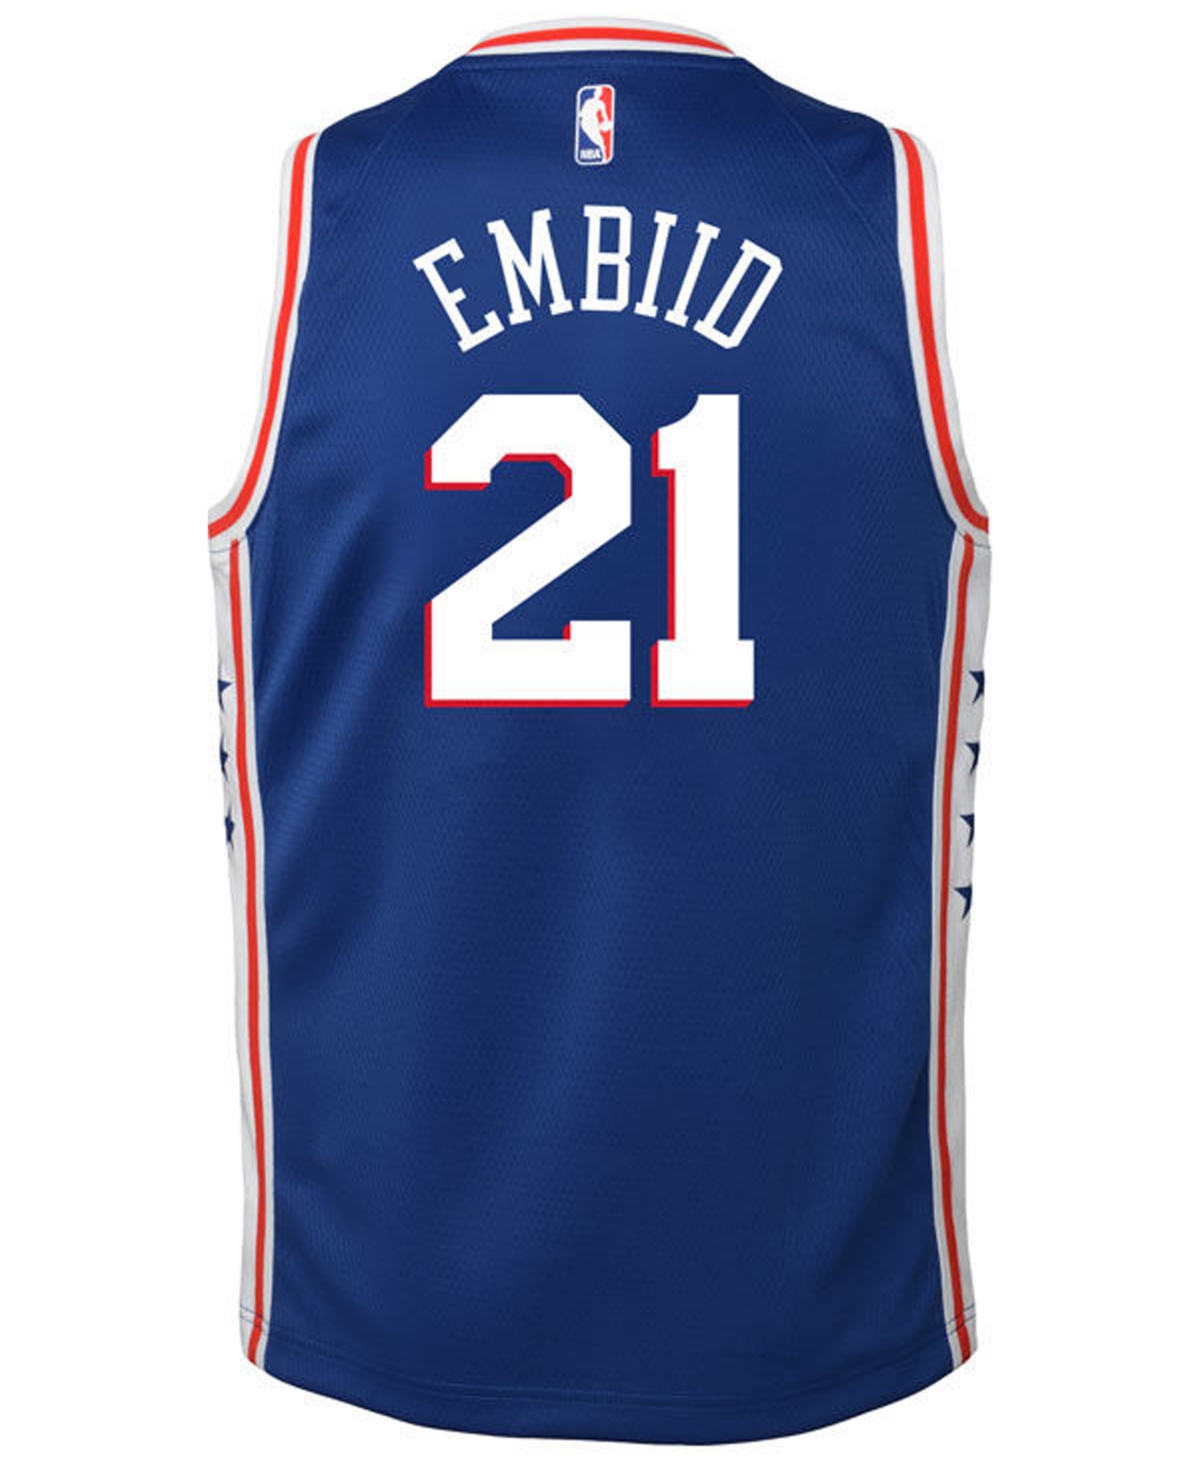 Nike Joel Embiid Philadelphia 76ers Icon Swingman Jersey, Big Boys (8-20)